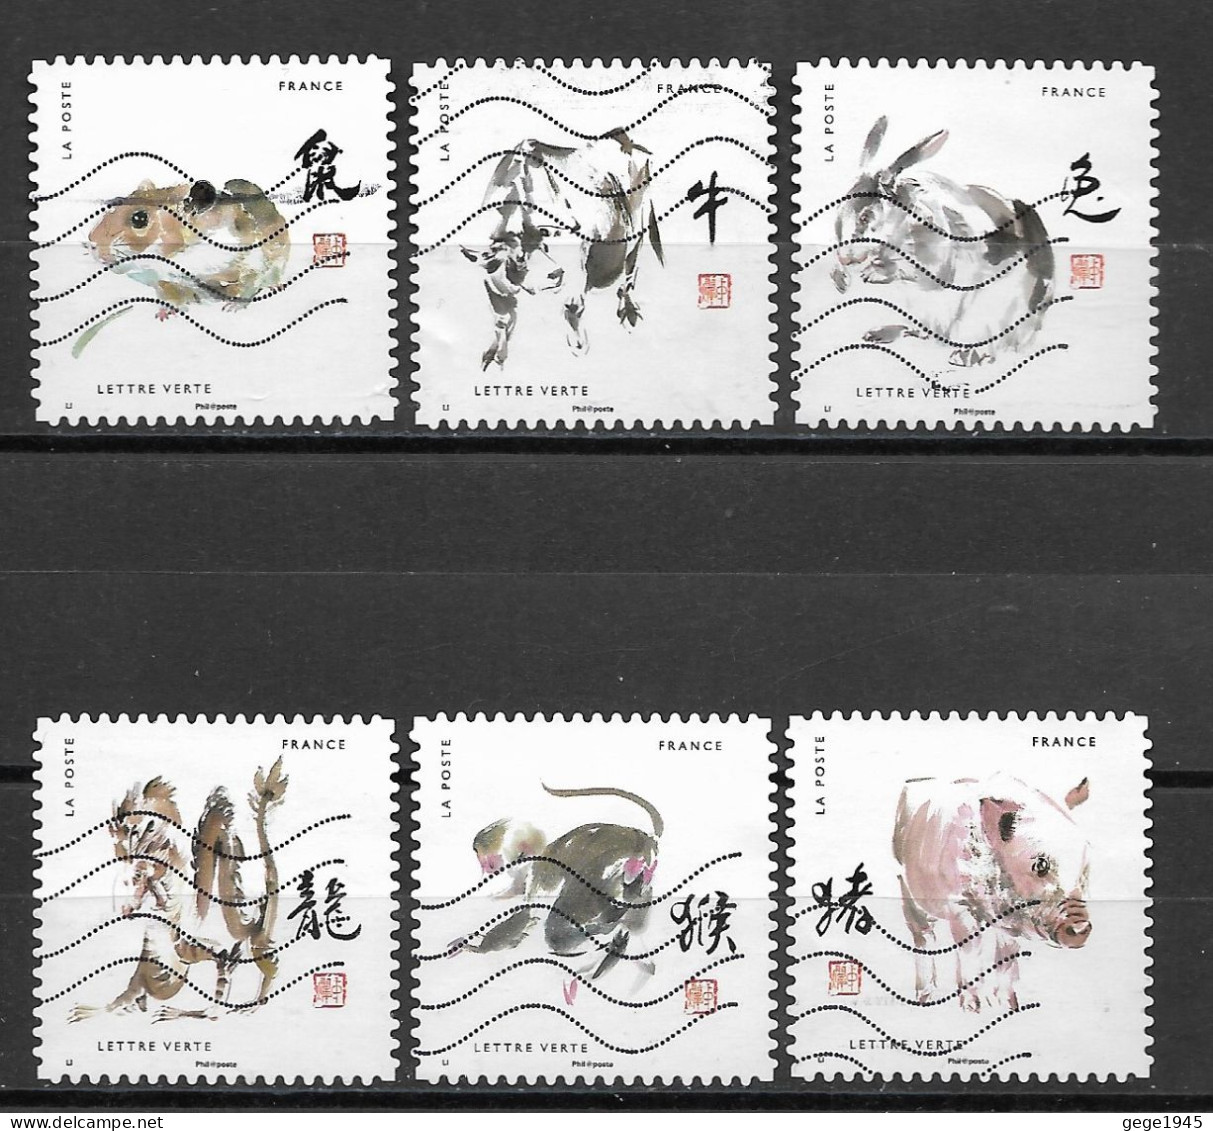 France 2017 Oblitéré Autoadhésif  N° 1374 - 1375 - 1377 - 1378 - 1382 - 1385  " Signes Astrologiques Chinois  " - Used Stamps